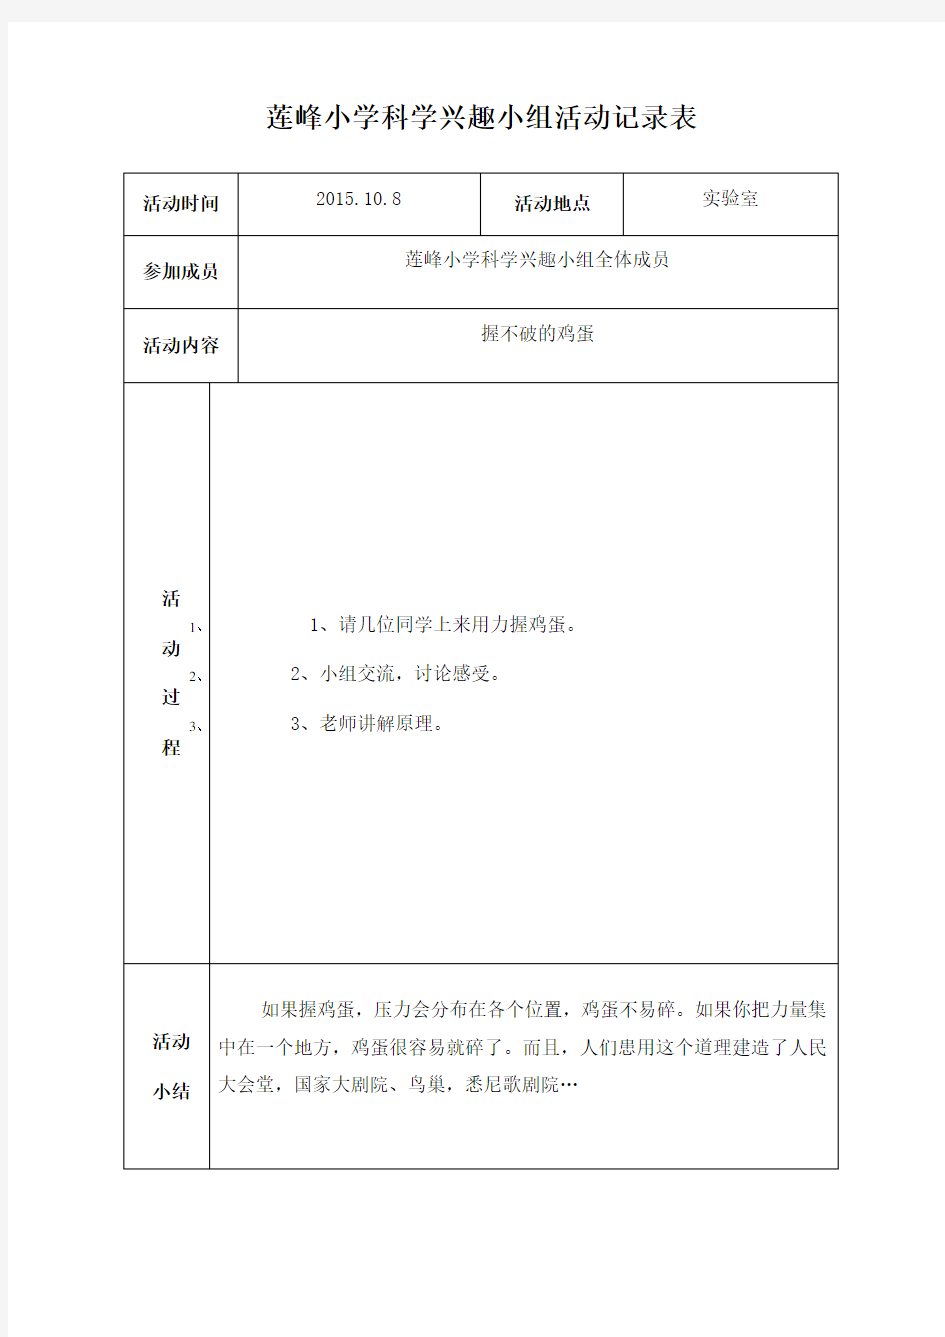 莲峰小学科学兴趣小组活动记录表